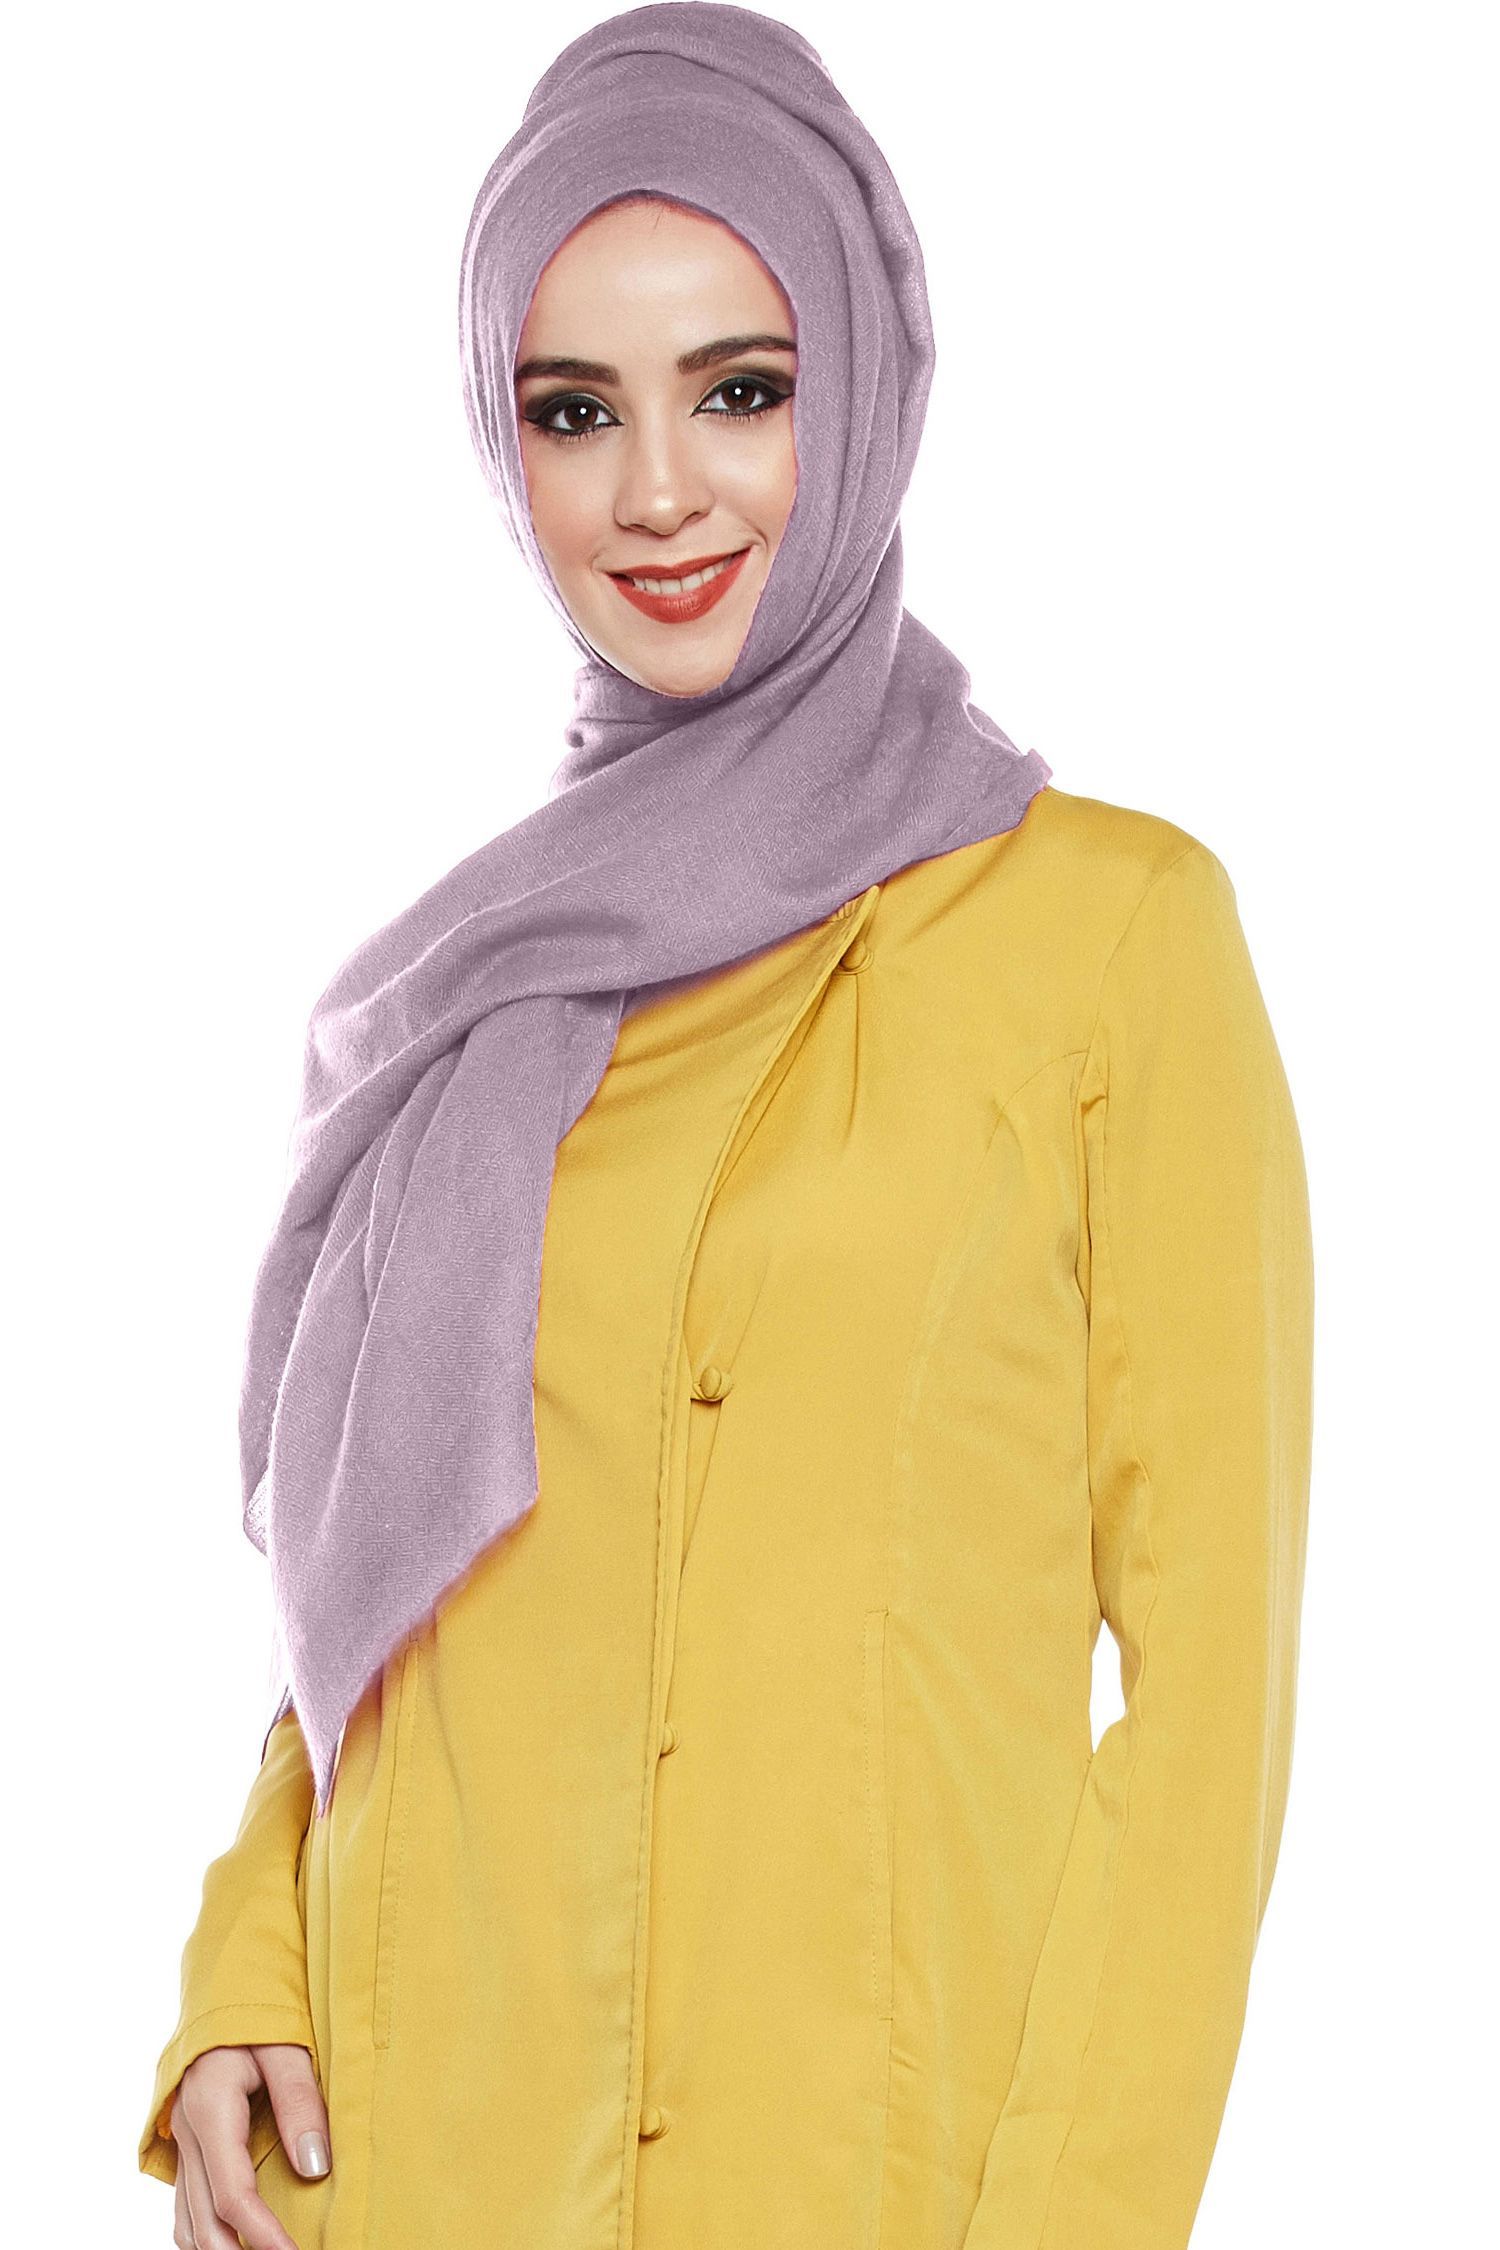 Lilac Pashmina Hijab | Handmade Cashmere Head Scarf